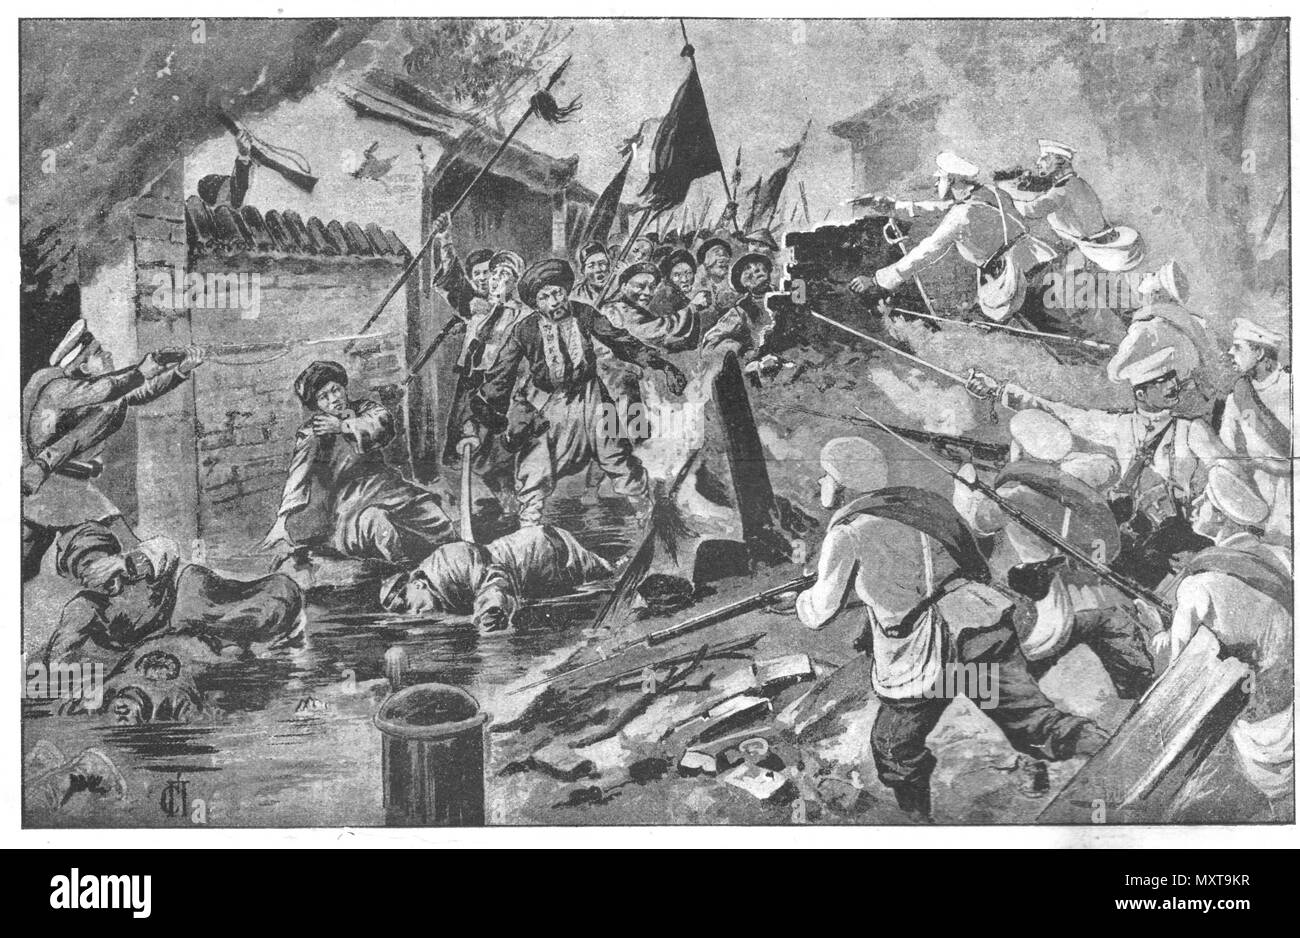 Cina. Pugili ribellione. Vintage illustrazioni incise. Pubblicato nella rivista nel 1900. Foto Stock